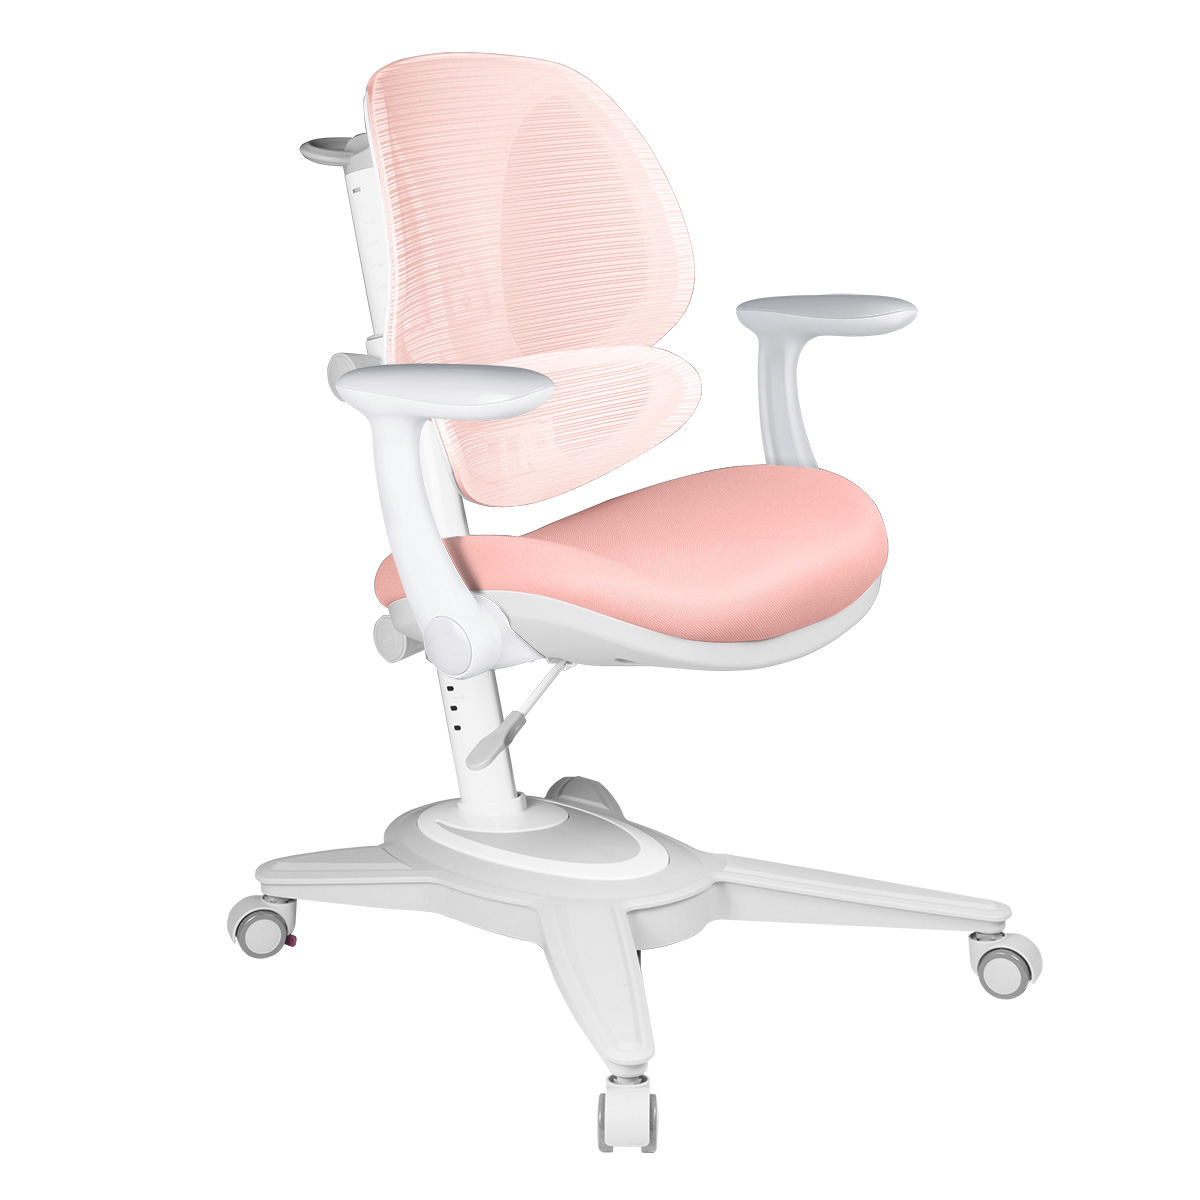 Детское кресло Anatomica Funken с подлокотниками, розовый детское кресло anatomica armata duos с подлокотниками розовый